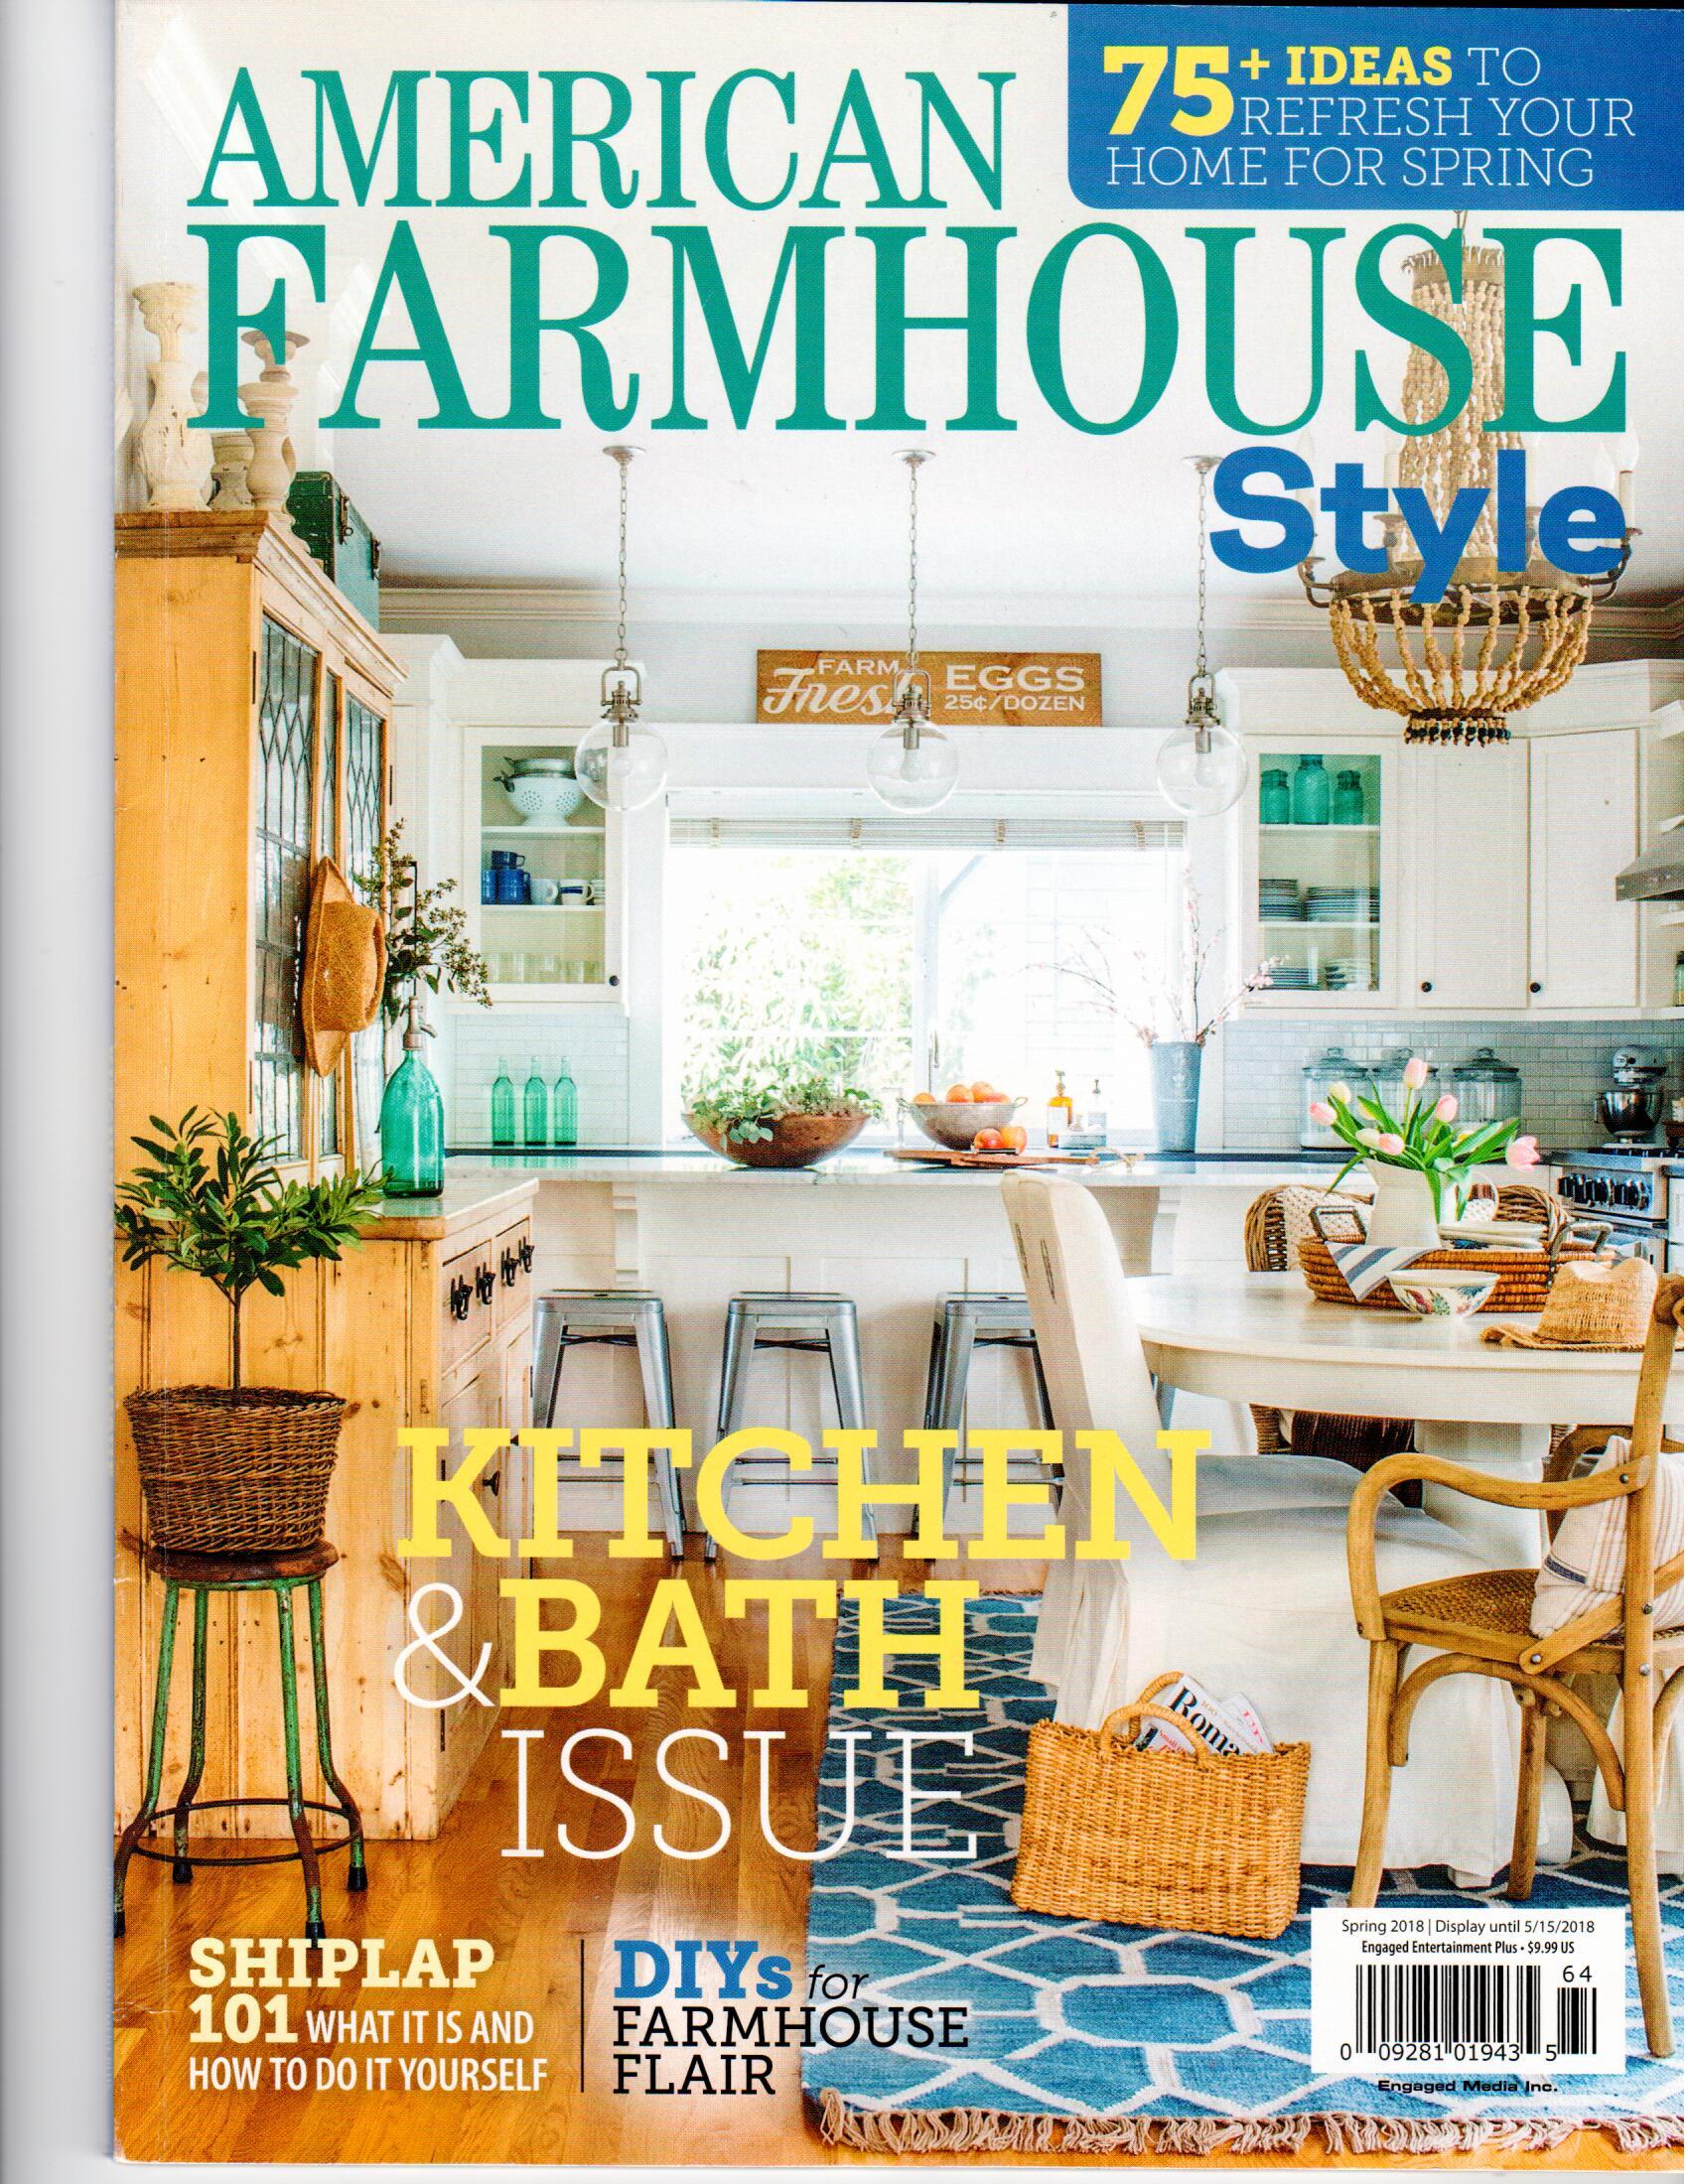 American Farmhouse Style: Farm Cottage Bathroom Design - TLS